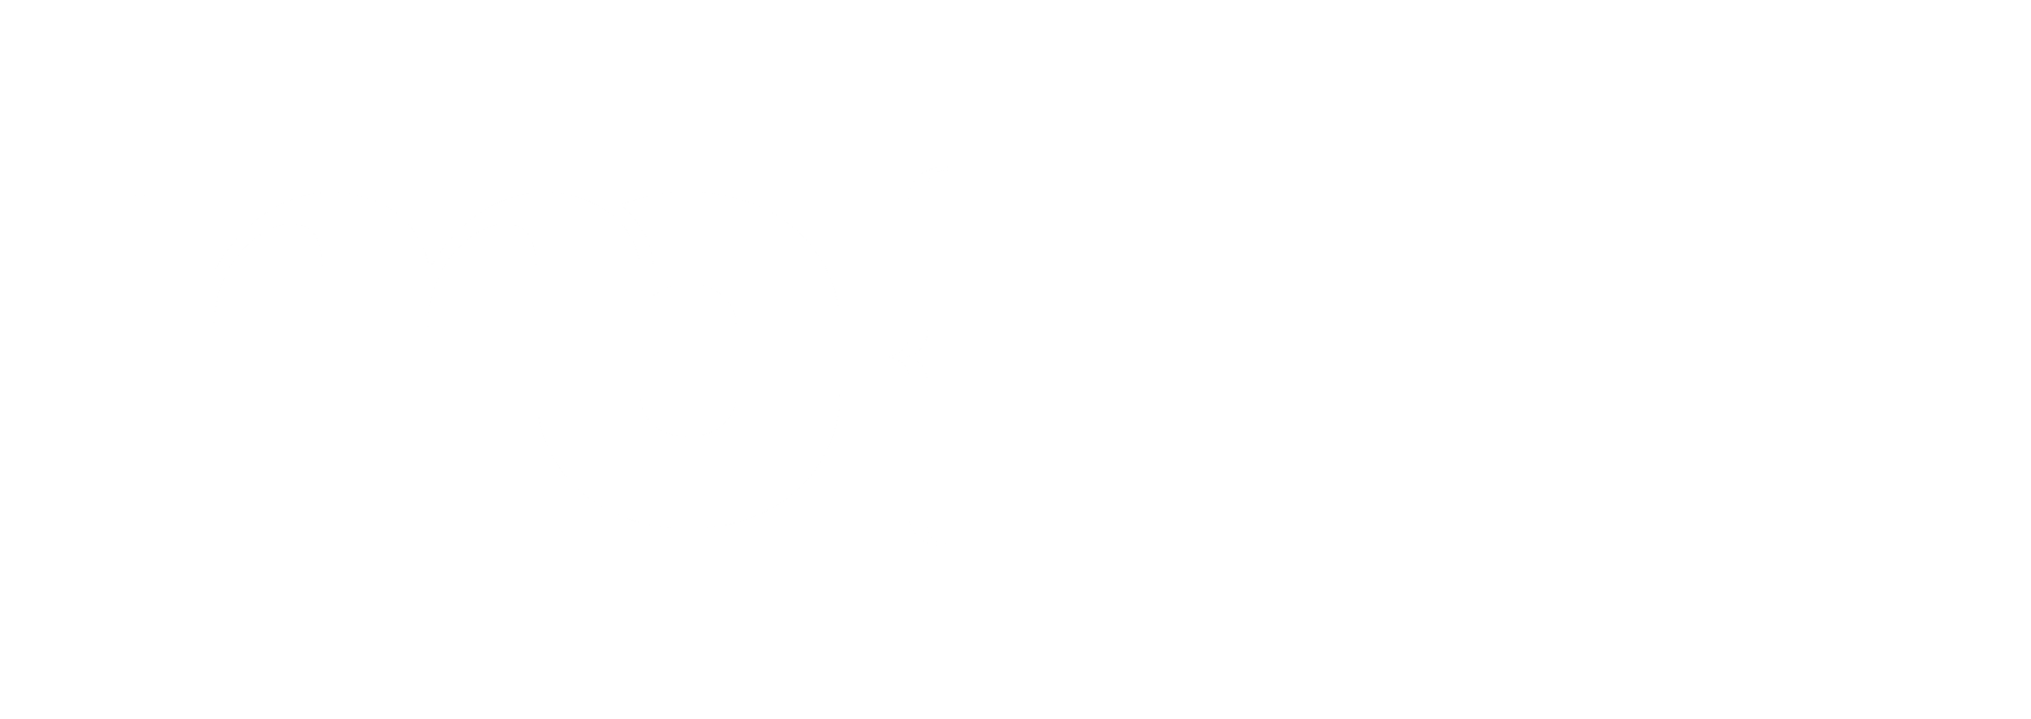 Logo de couleur blanche pour le rendez-vous virtuel MEET UP réalisé par MUSEUM CONNECTIONS